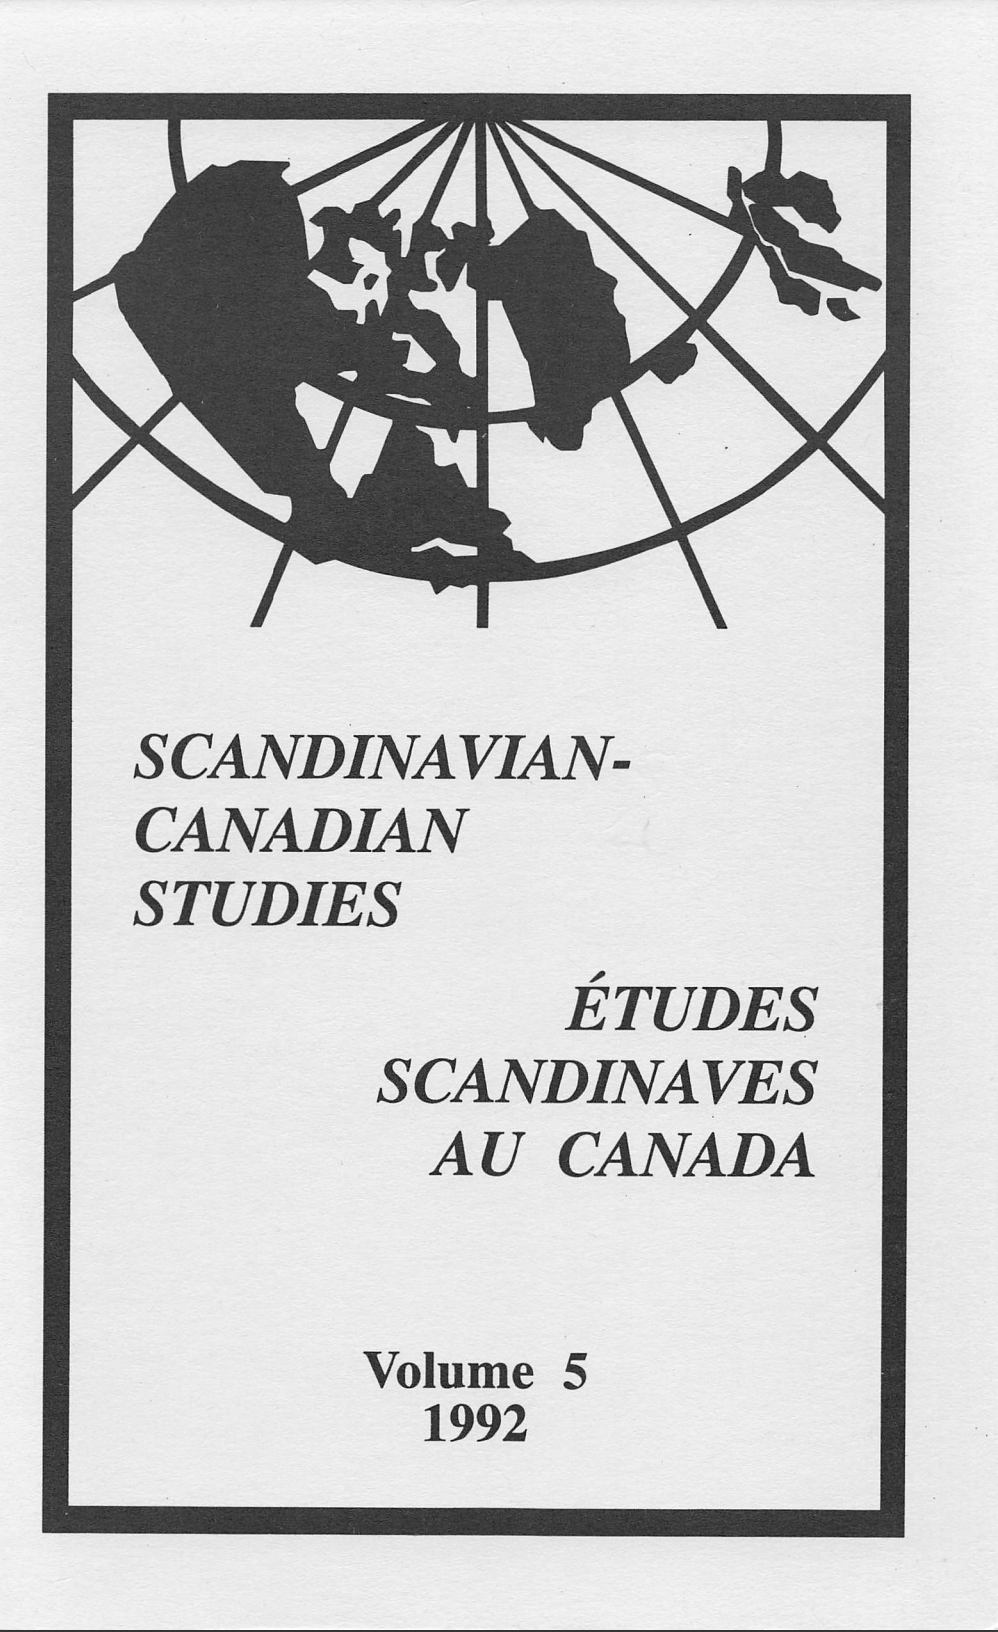 					View Vol. 5 (1992): SCANDINAVIAN-CANADIAN STUDIES/ÉTUDES SCANDINAVES AU CANADA Vol. 5 (1992)
				